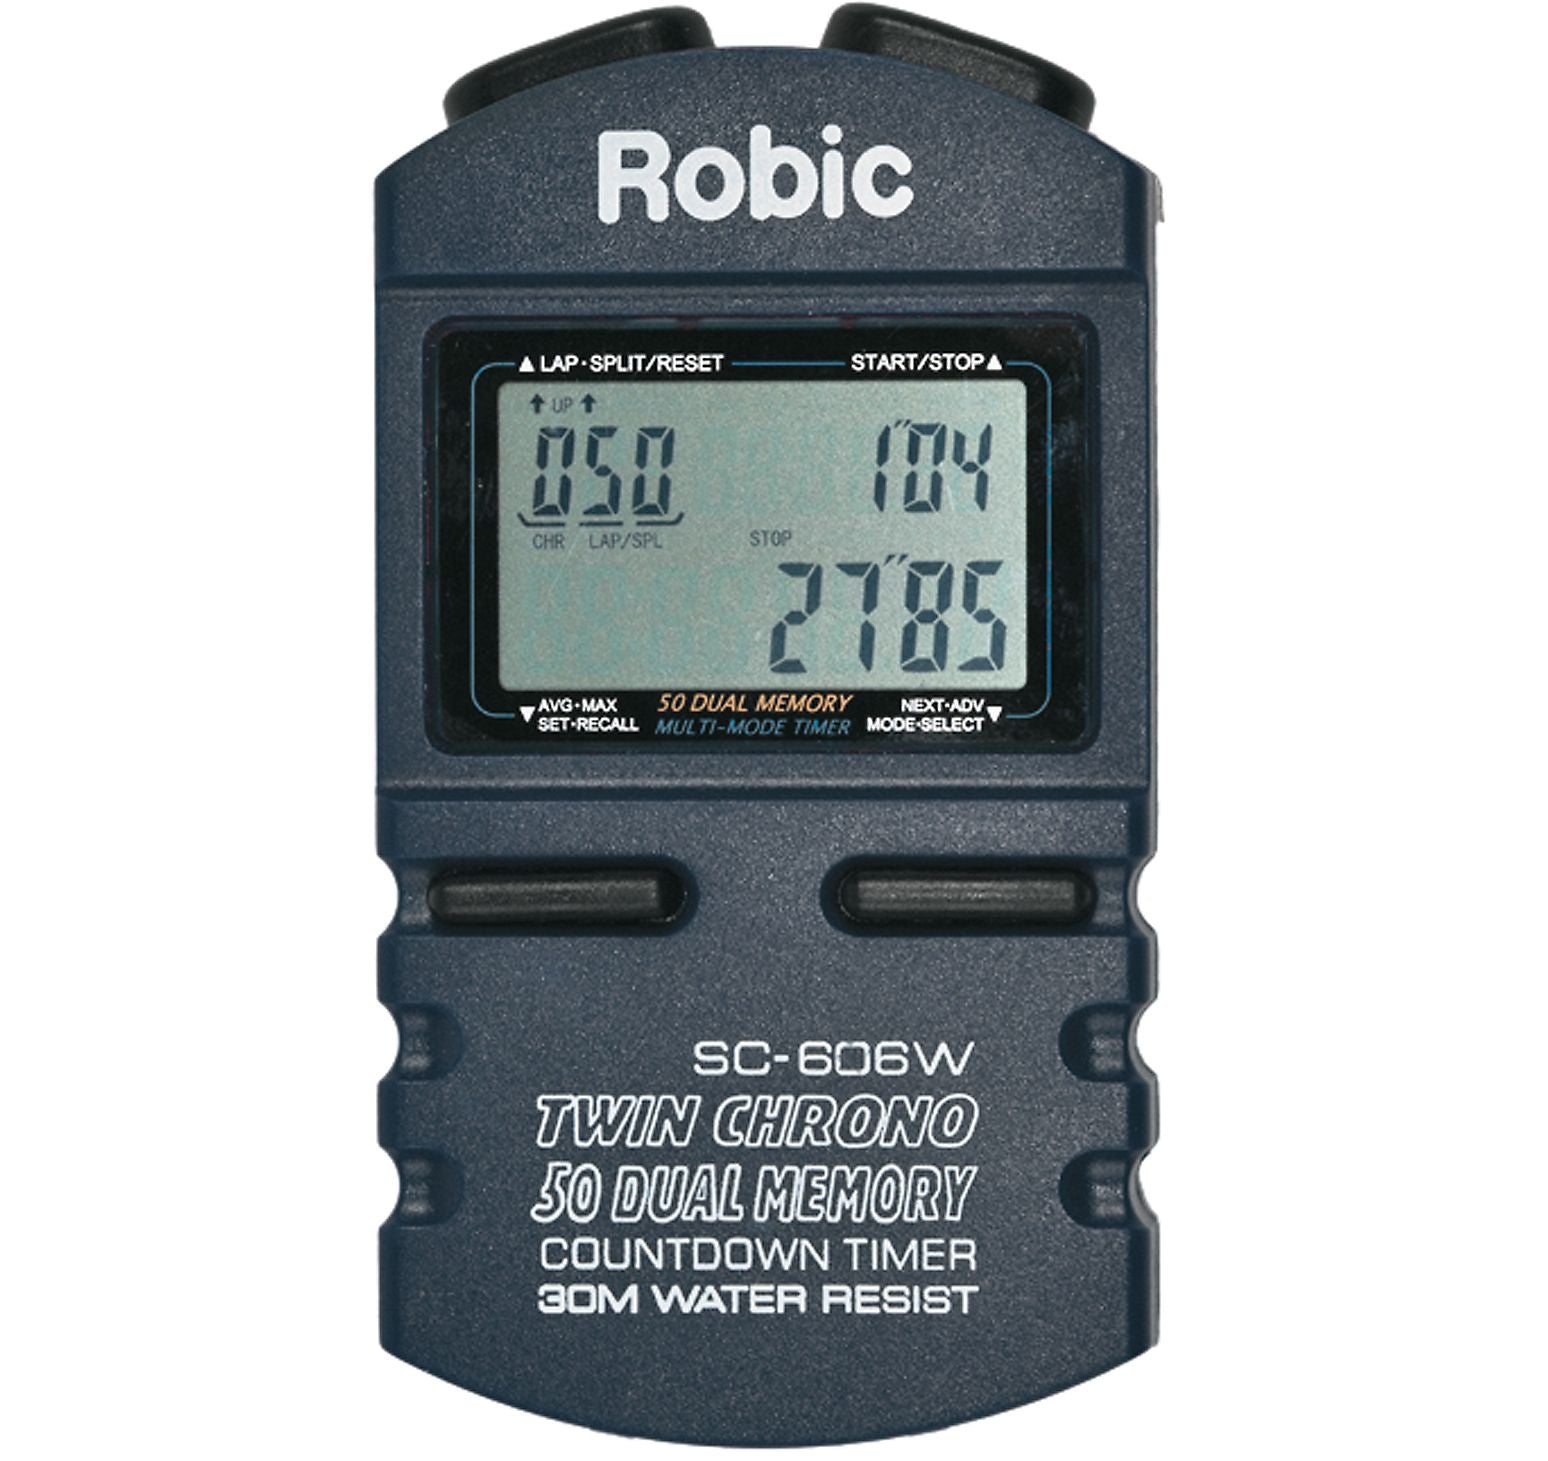 Robic SC-606W Stopwatch